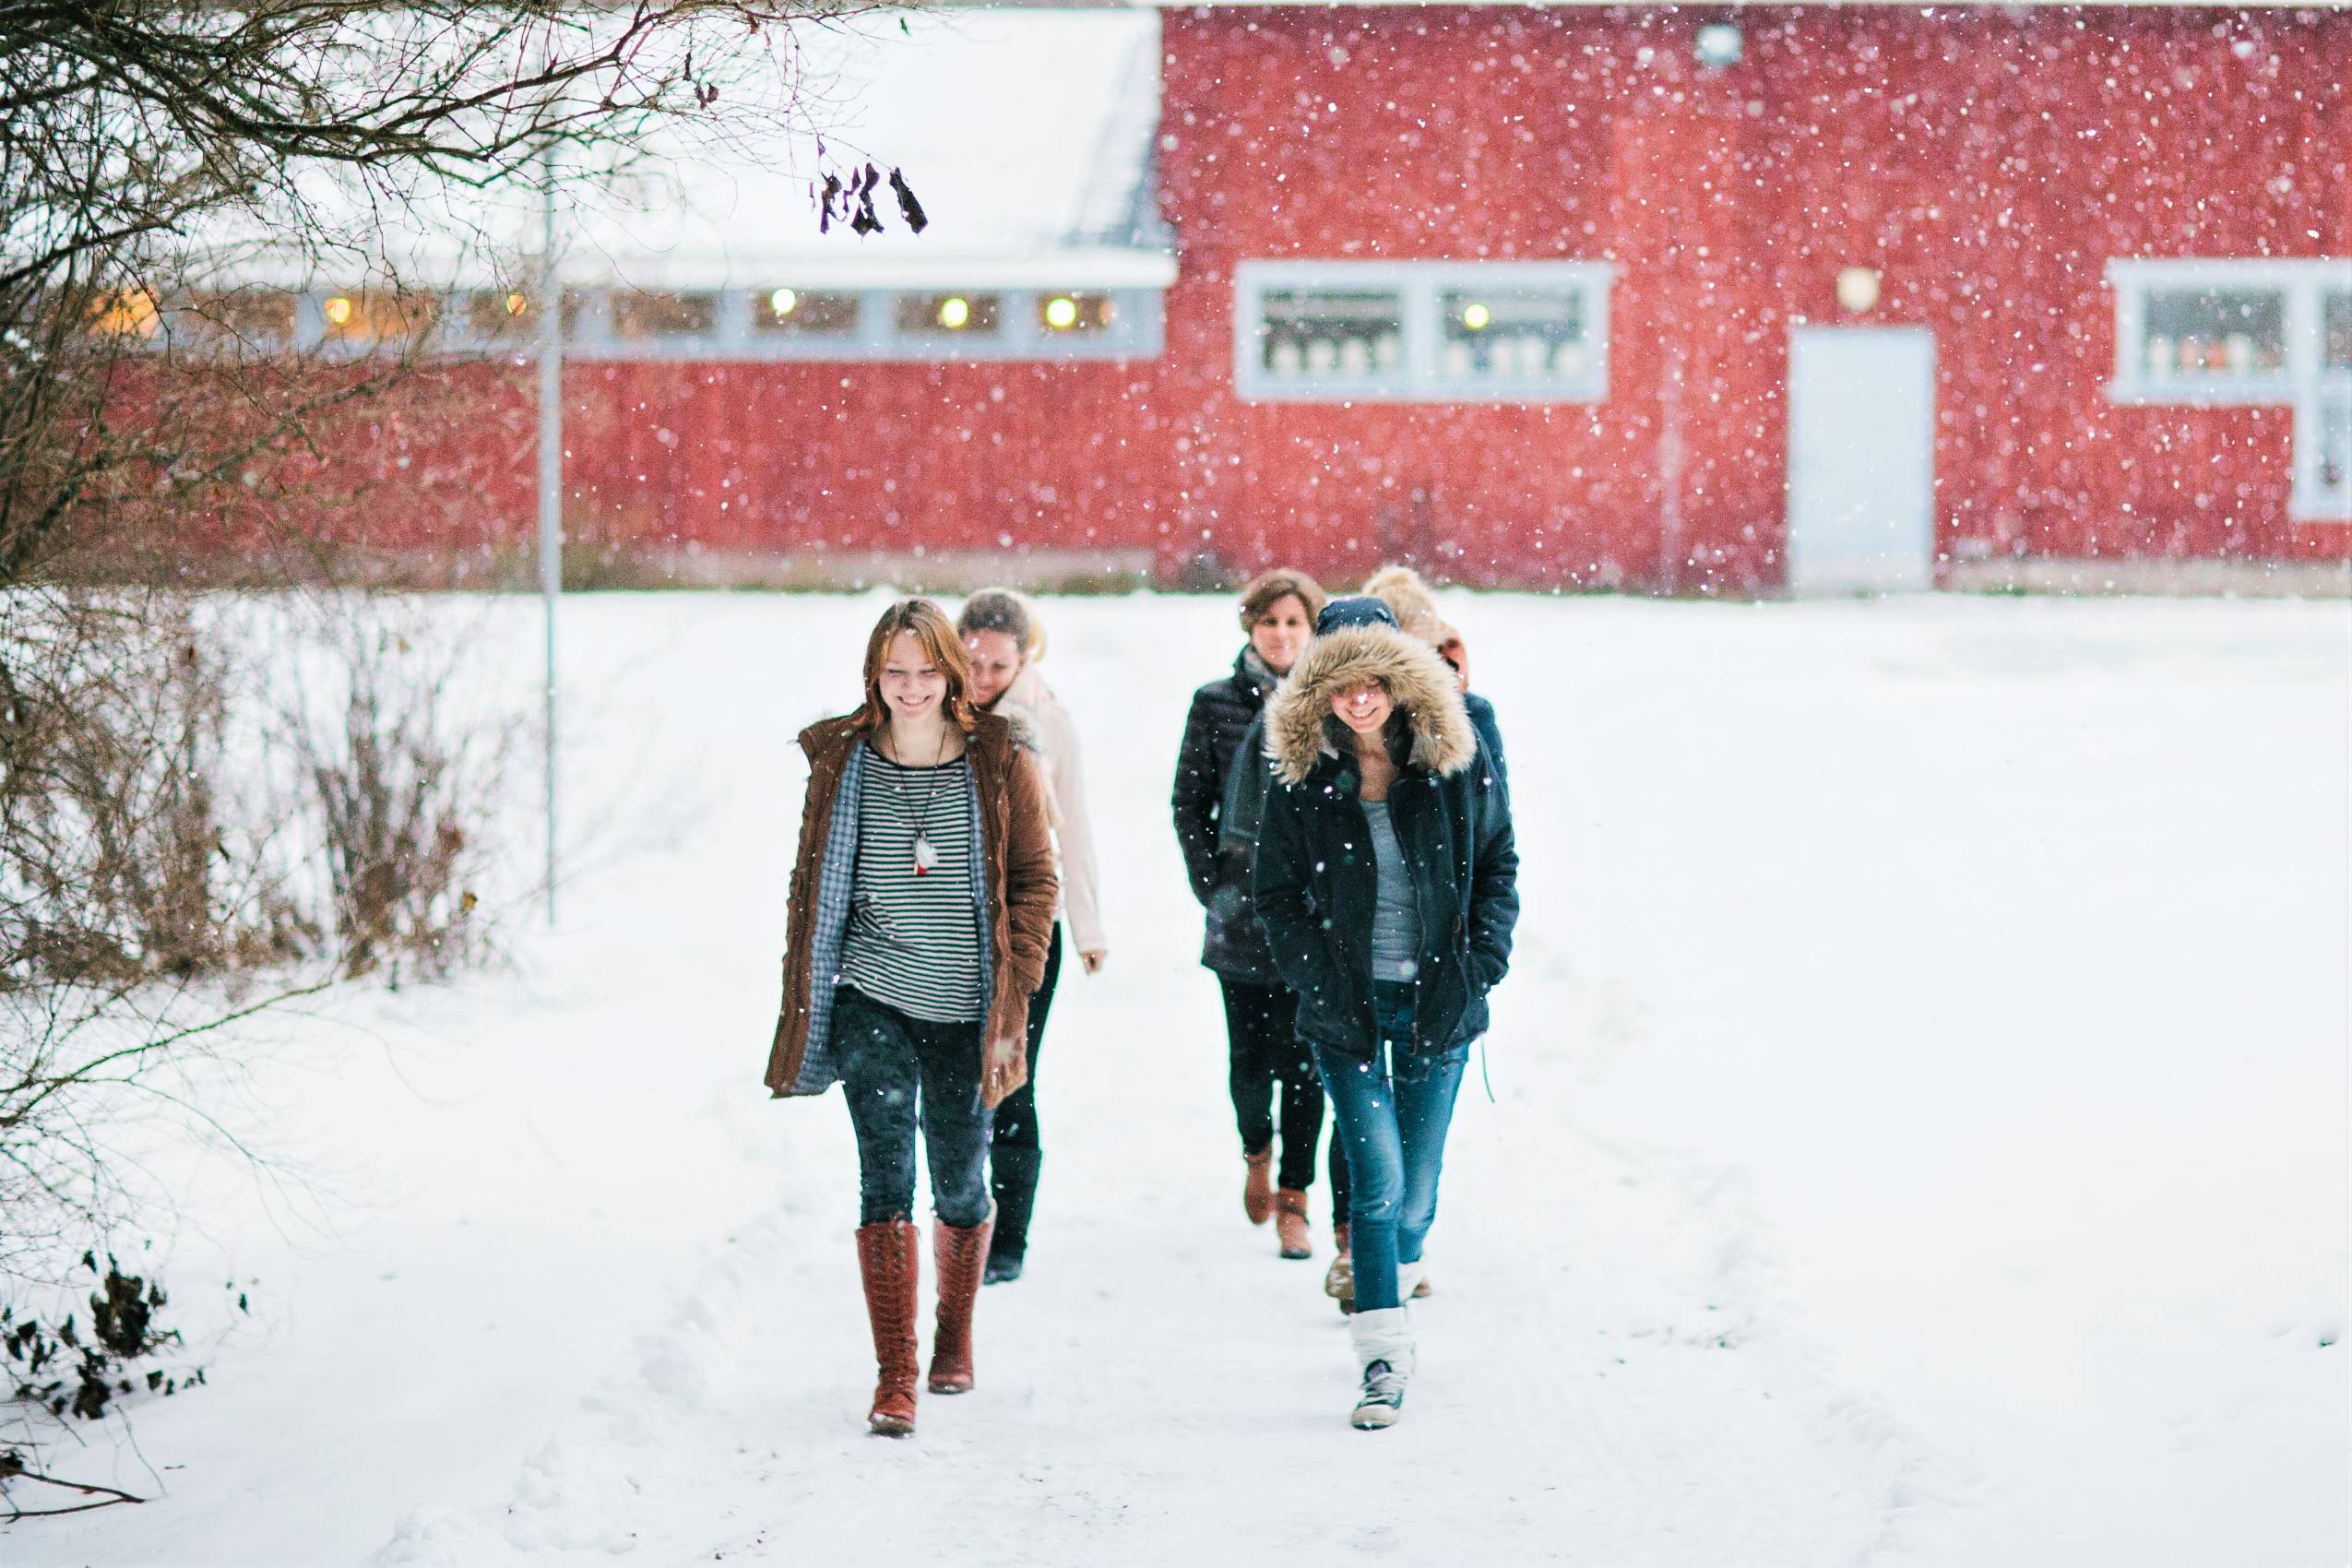 Kolme opiskelijaa ja opettaja kävelevät lumisessa maisemassa taidetalolta poispäin